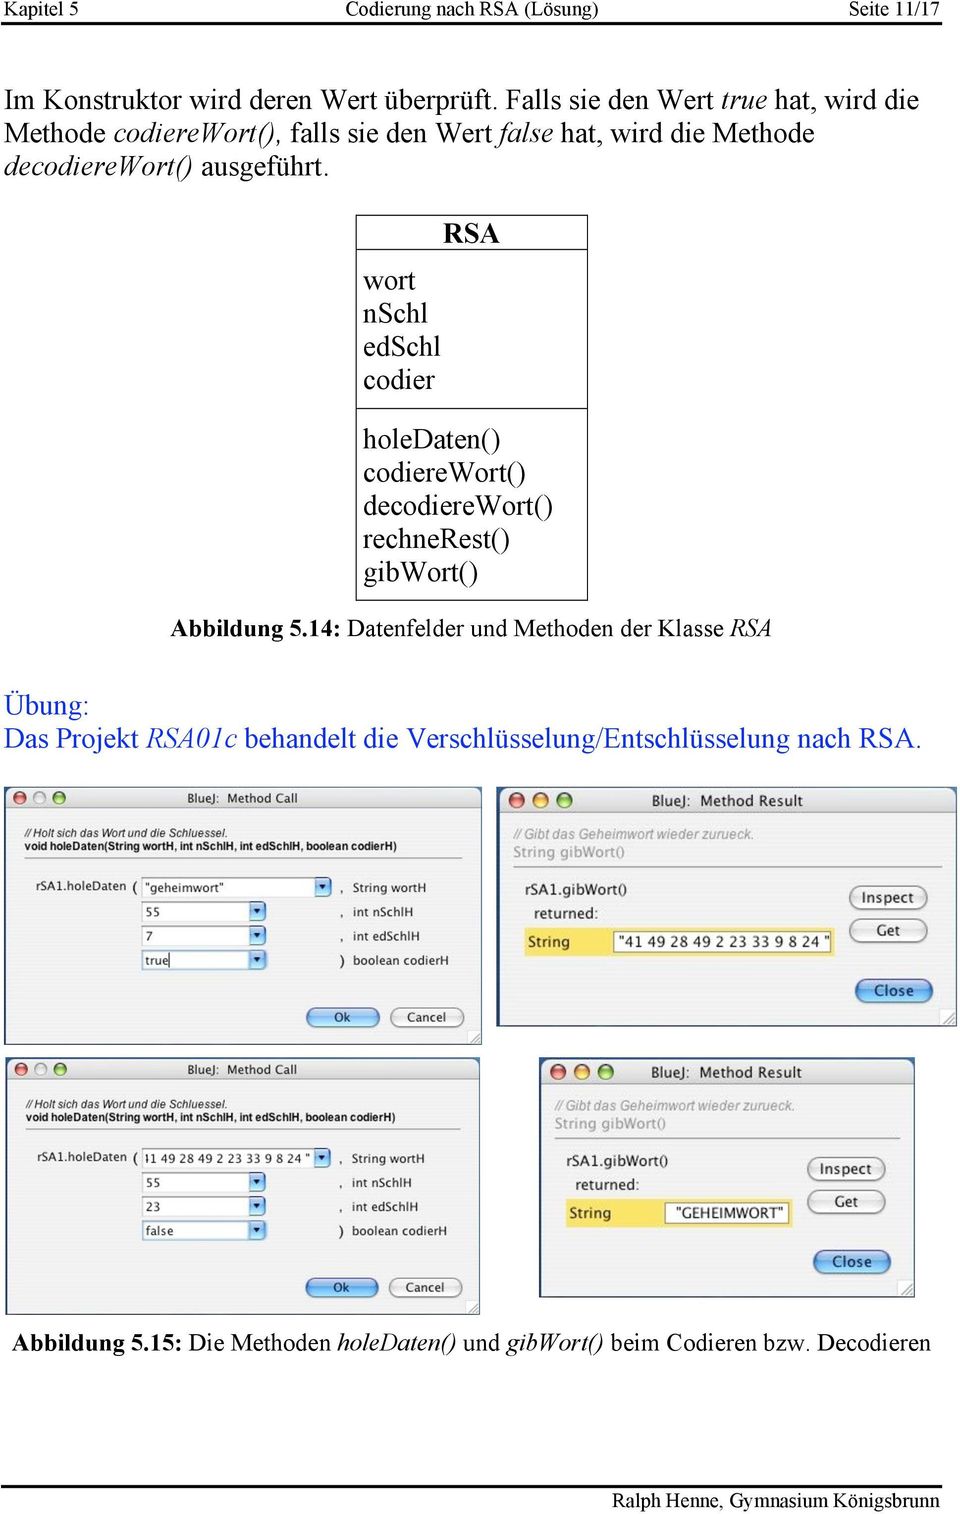 wort nschl edschl codier RSA holedaten() codierewort() decodierewort() rechnerest() gibwort() Abbildung 5.